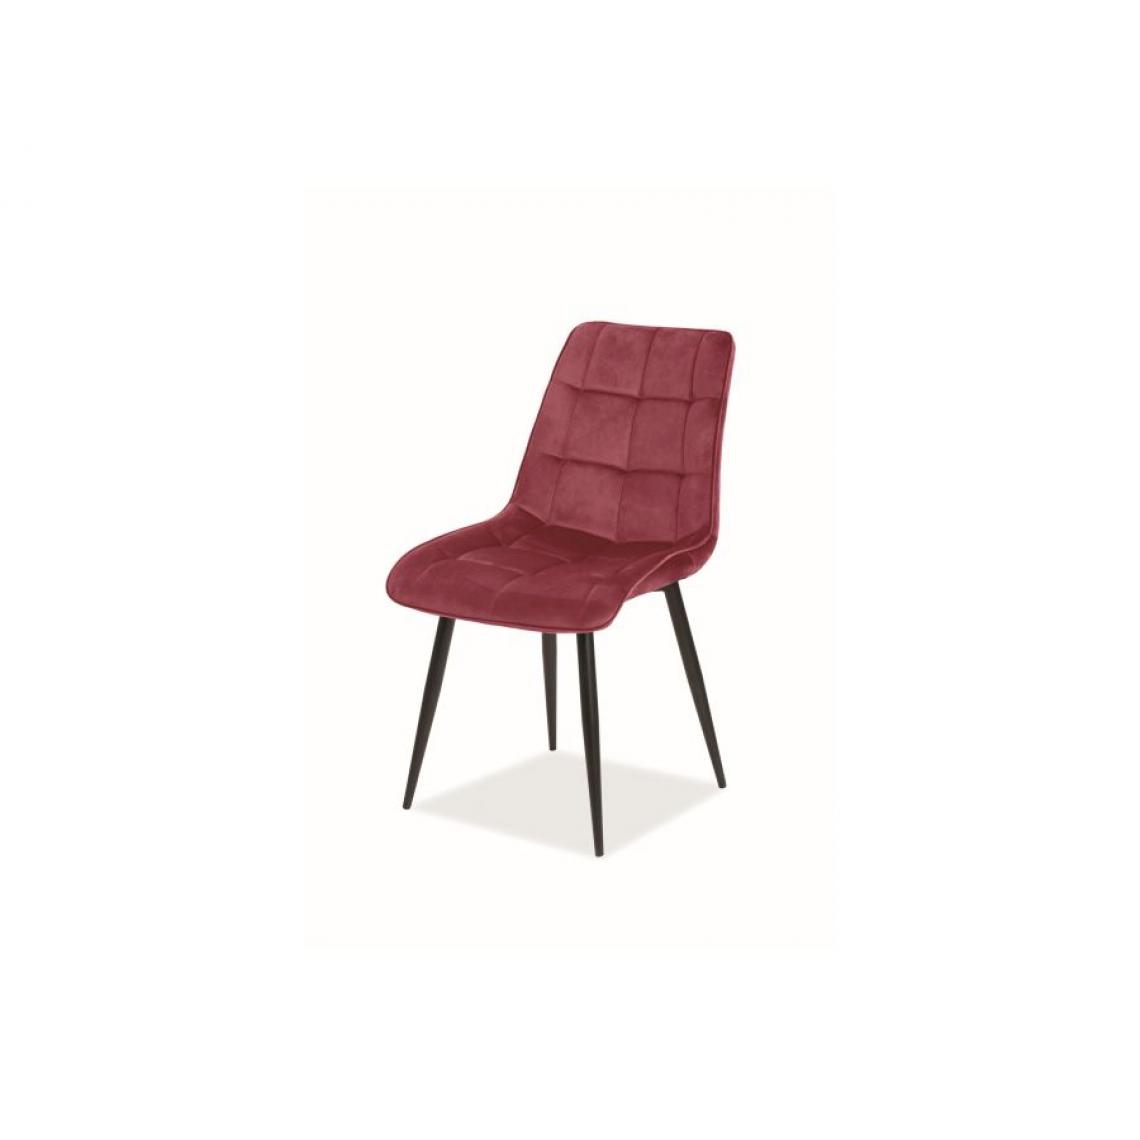 Hucoco - CHIM | Chaise matelassée pour salon et salle à manger | Dimensions : 89x51x44 cm | Rembourrage en velours | Pieds en métal - Bordeaux - Chaises